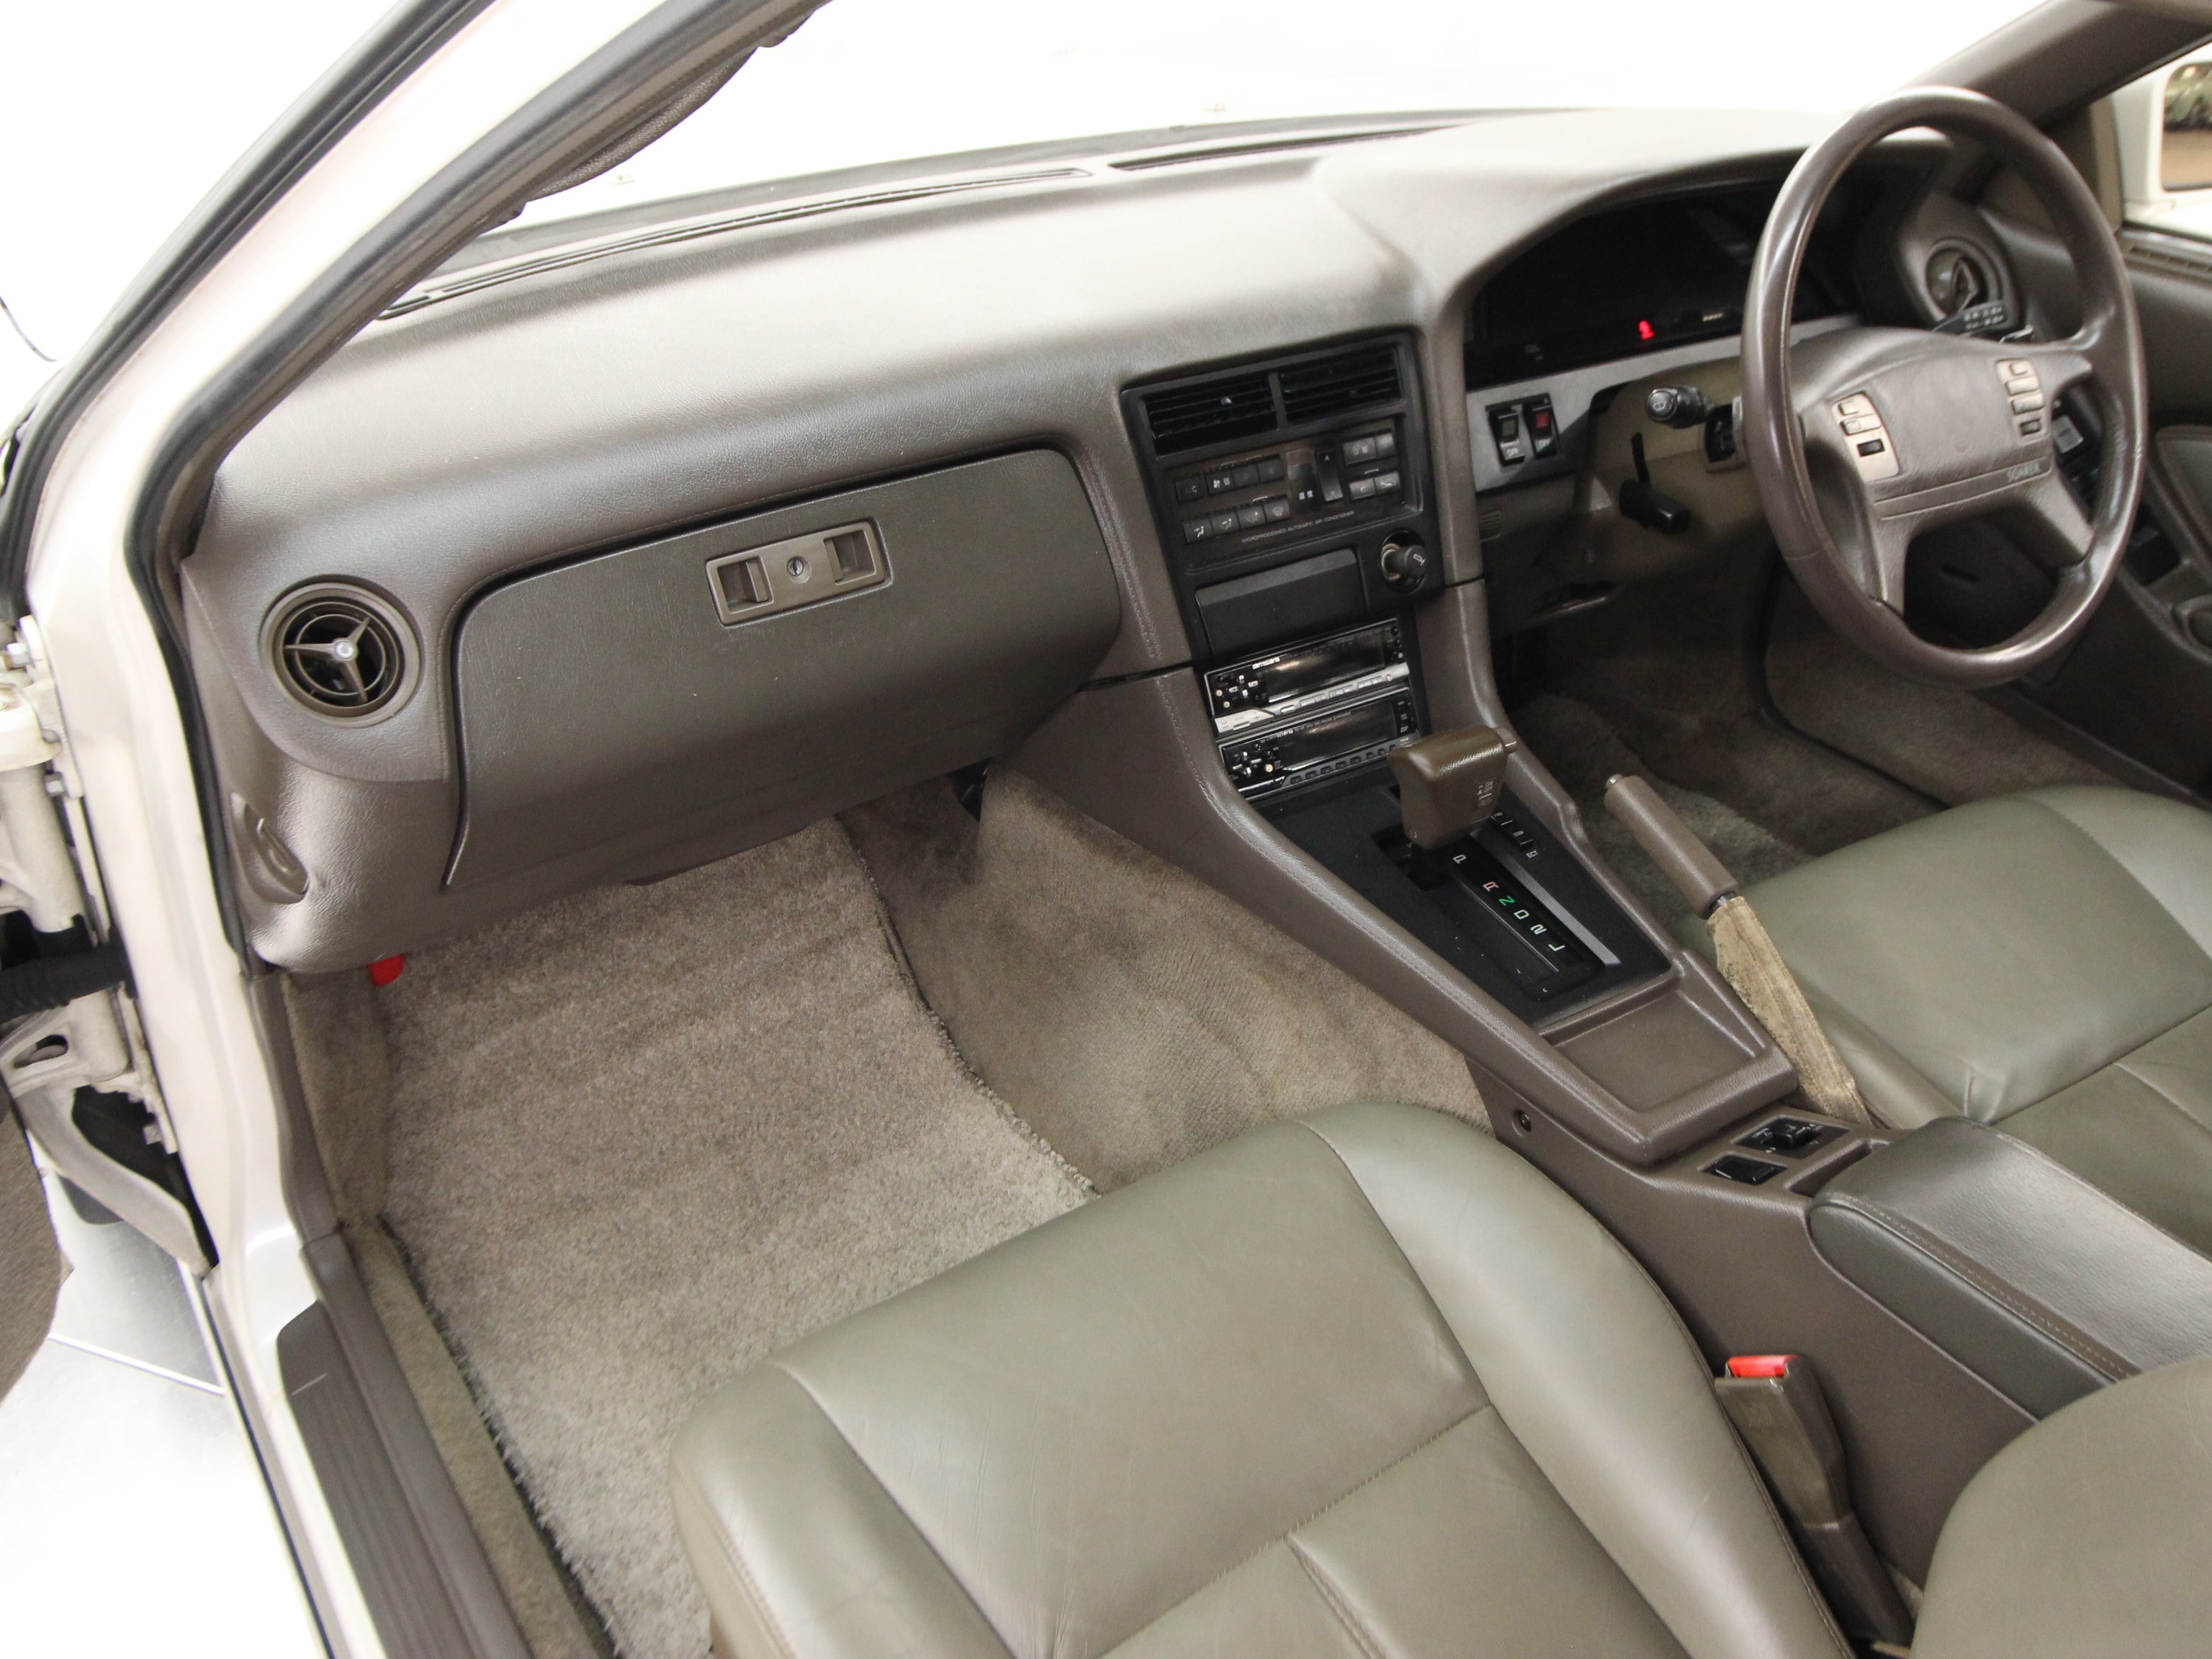 1989 Toyota Soarer 15